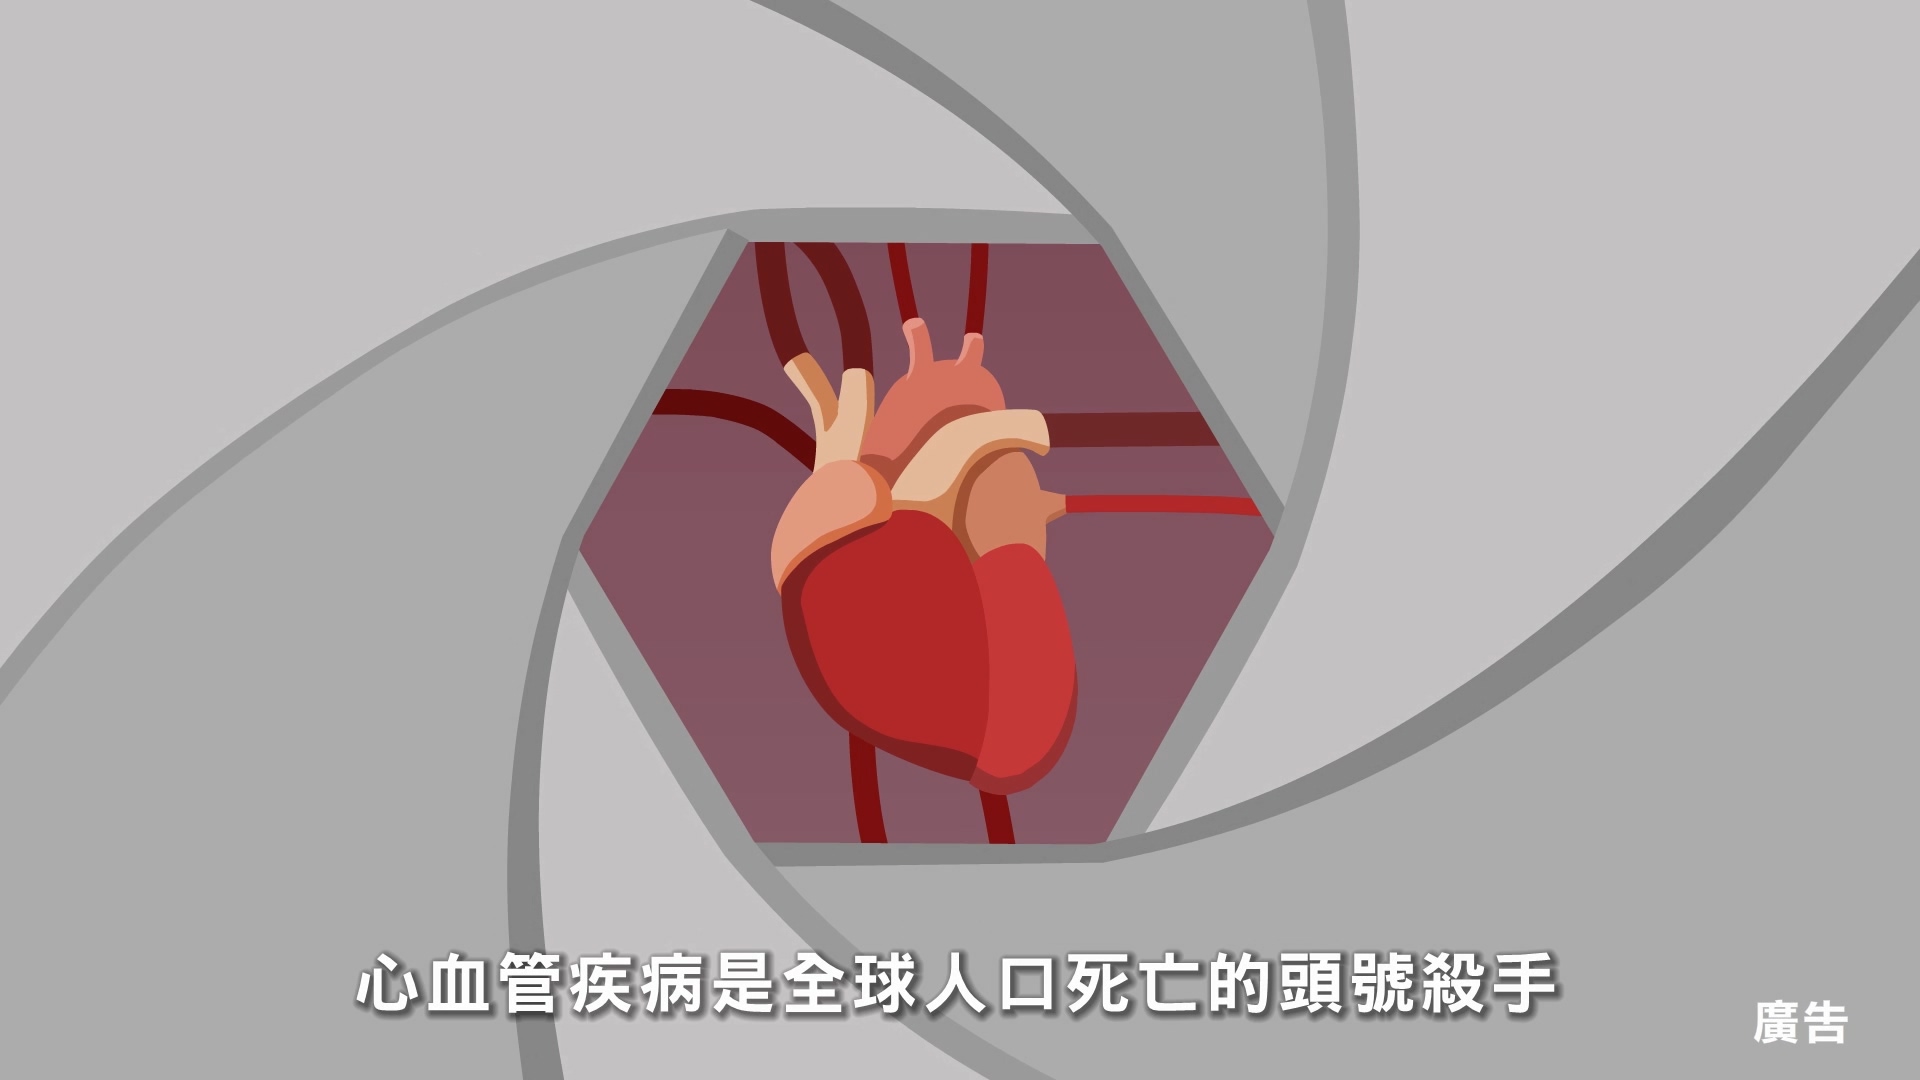 預防心血管疾病 危險因子篇30秒短片(國語)文章照片